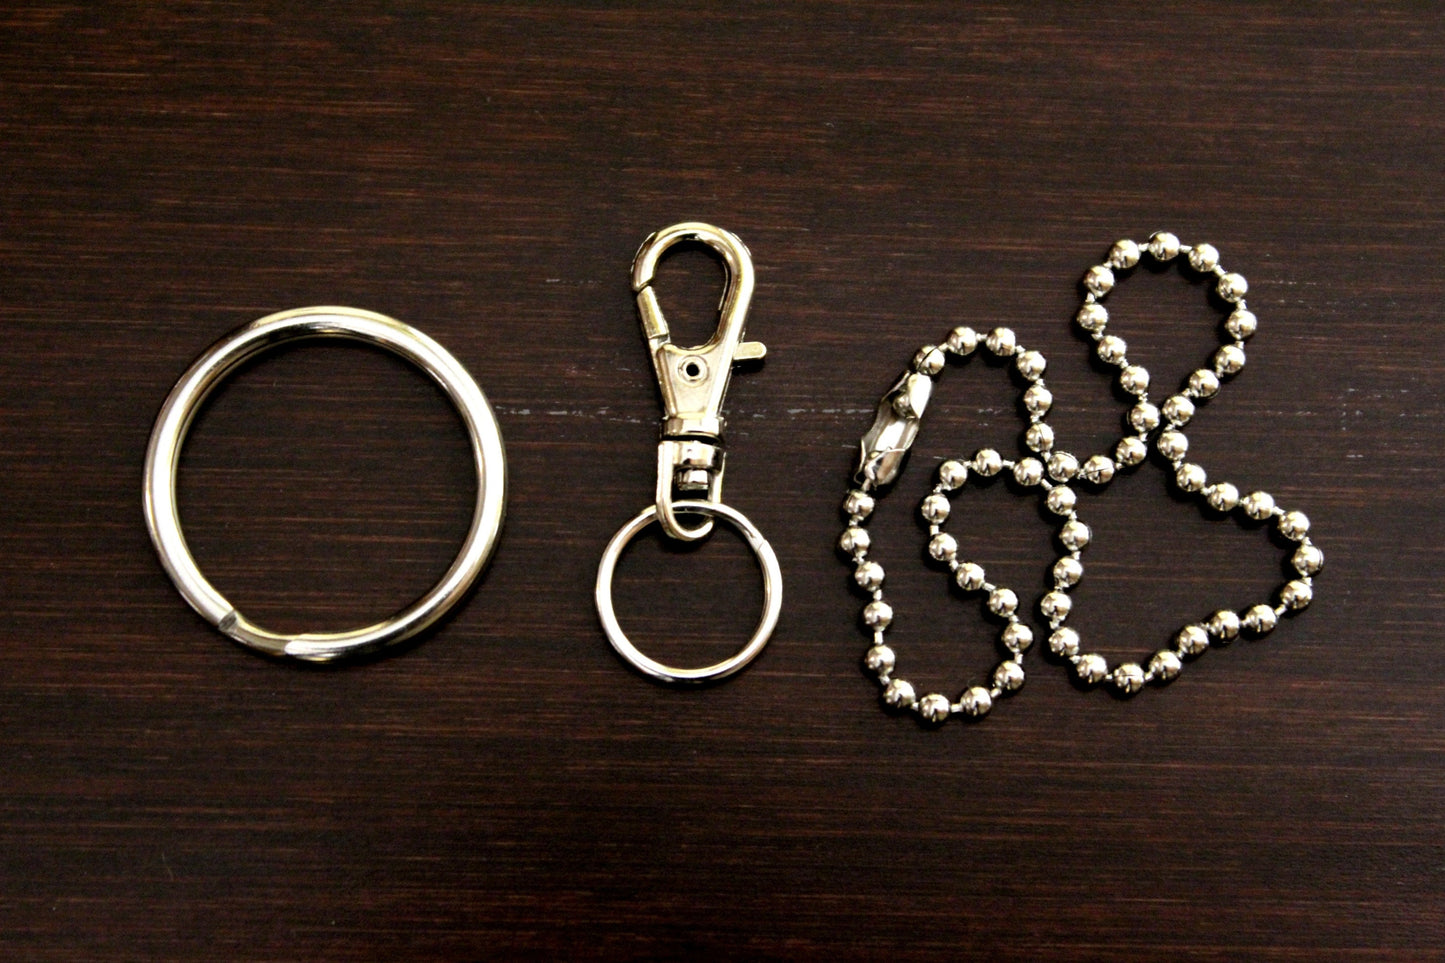 Claddagh Key Ring/ Keychain / Zipper Pull - Claddagh Irish Keychain - Irish Knot Gift - Claddagh Gift - Irish Symbol Gift - I/B/H